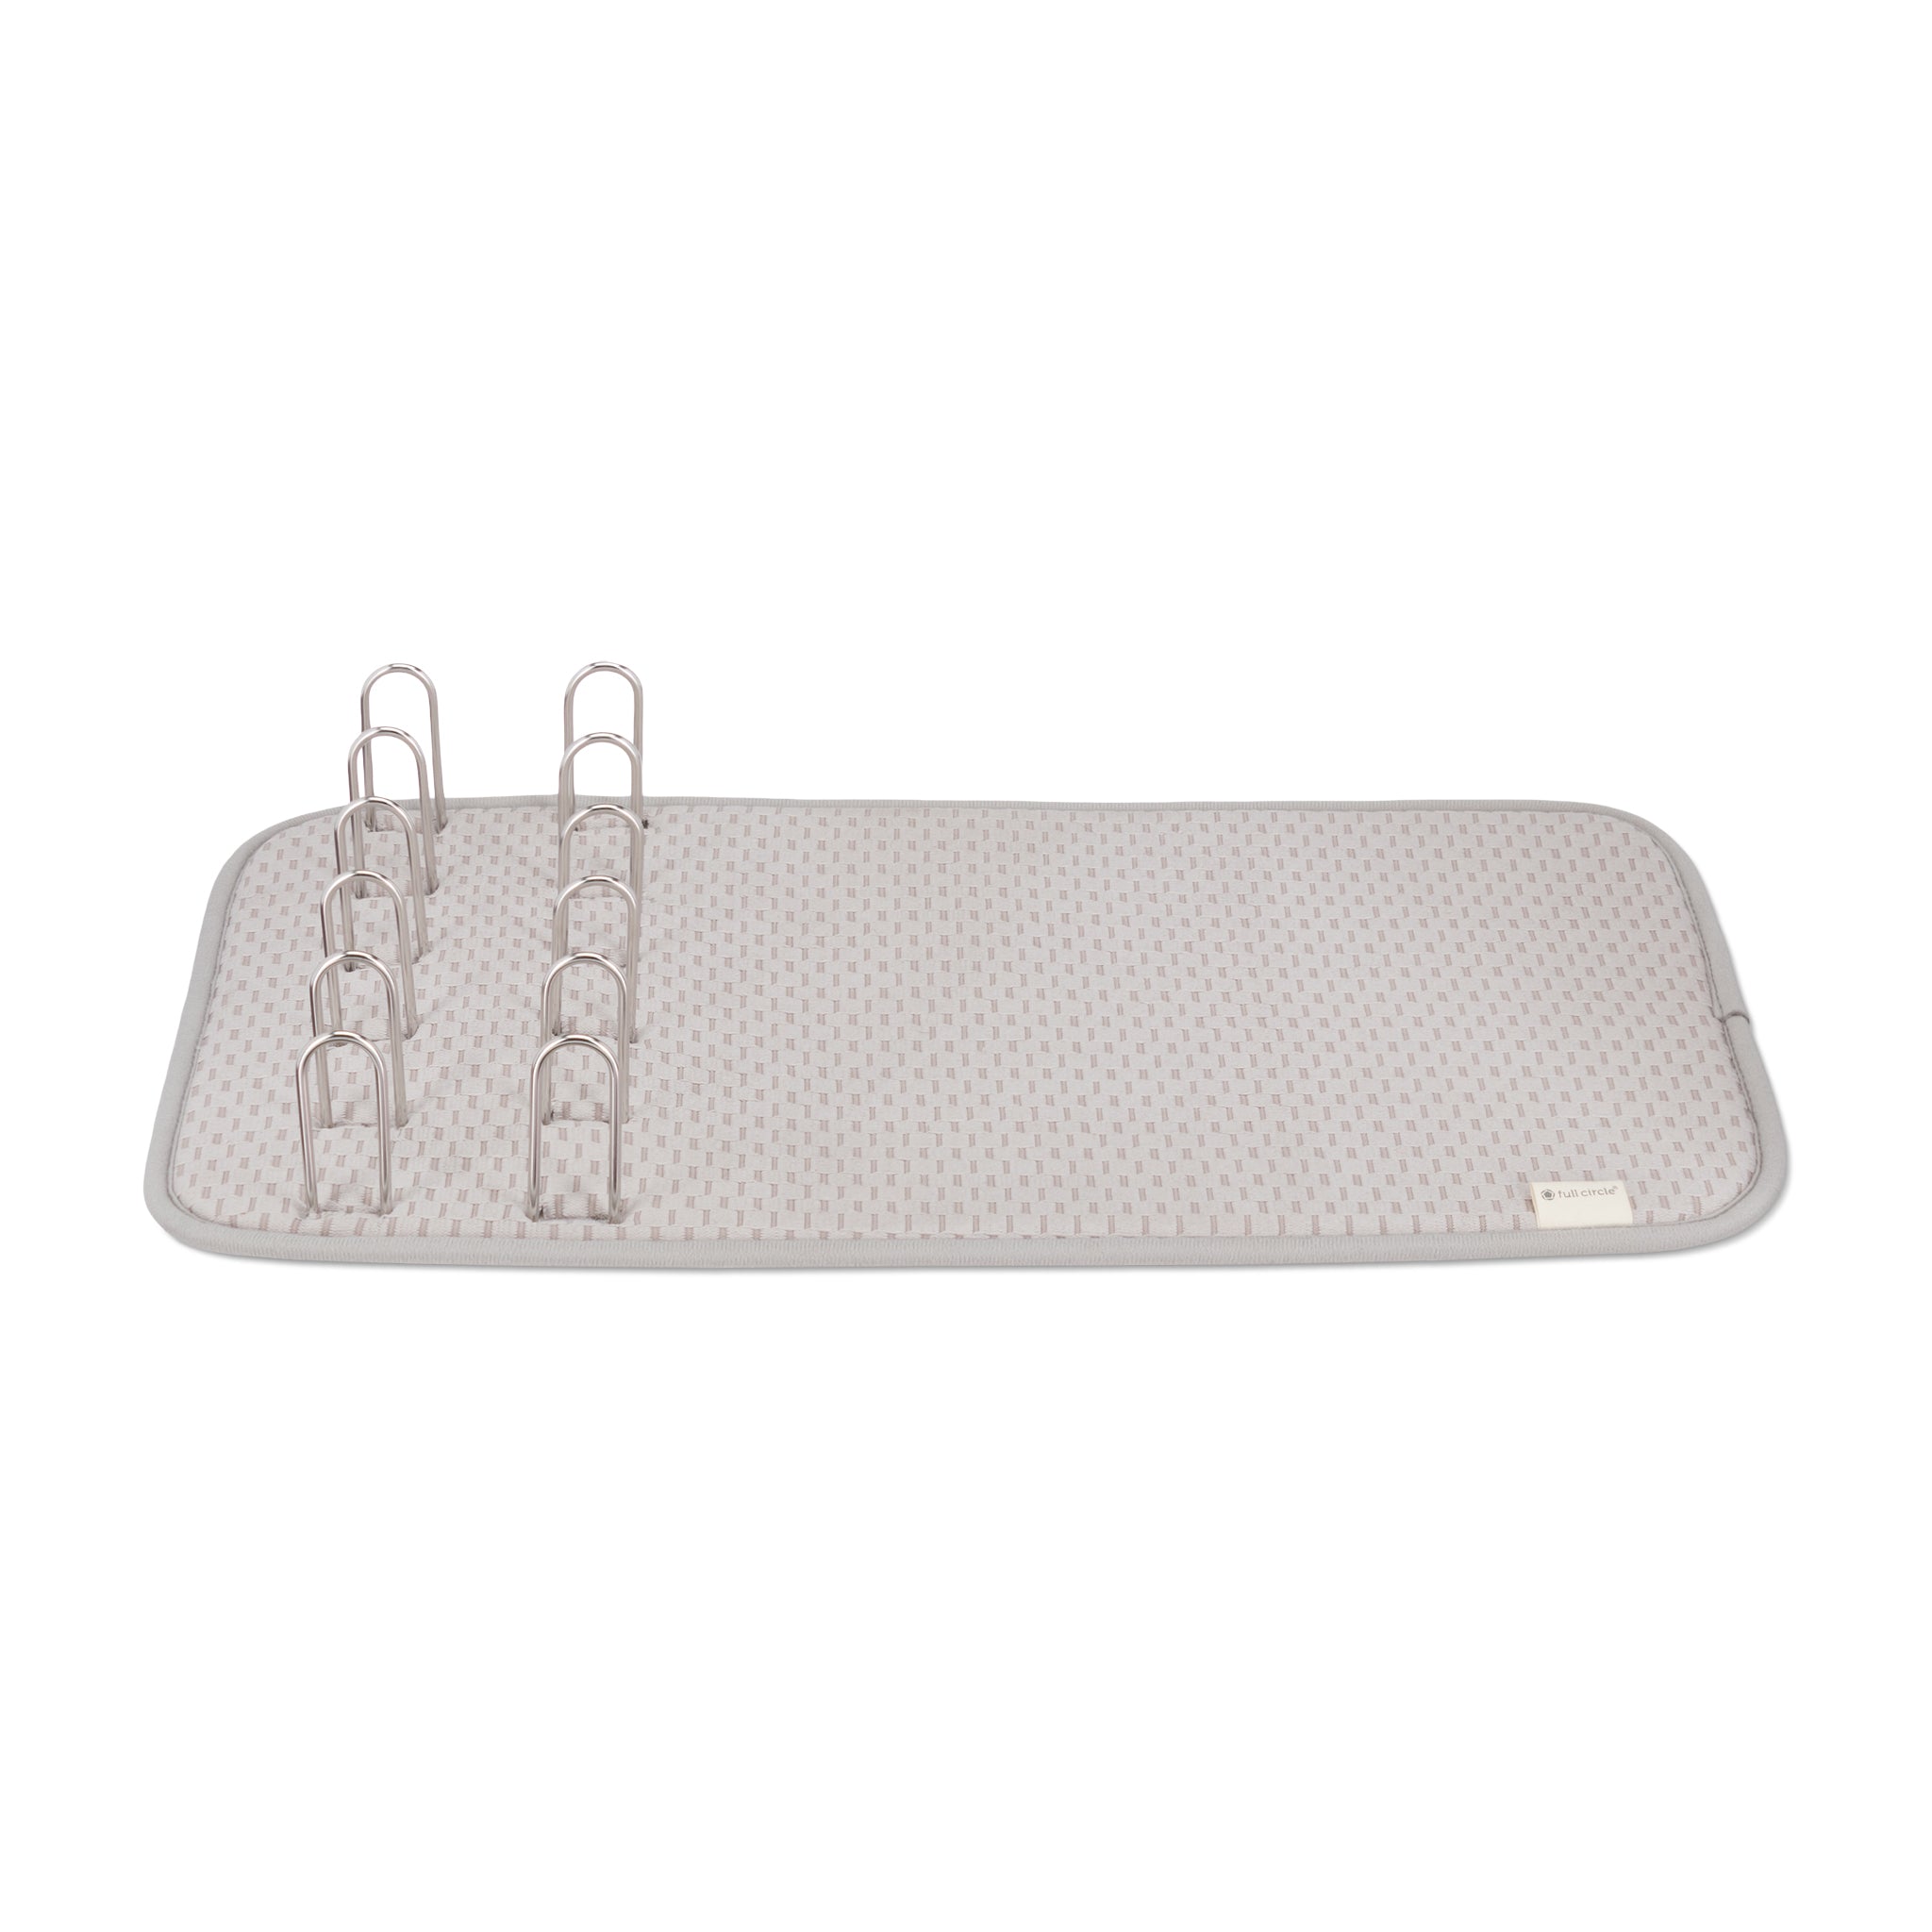 Dishwashing Tools: Microfiber Dish Drying Mat, Gray, 18 x 12